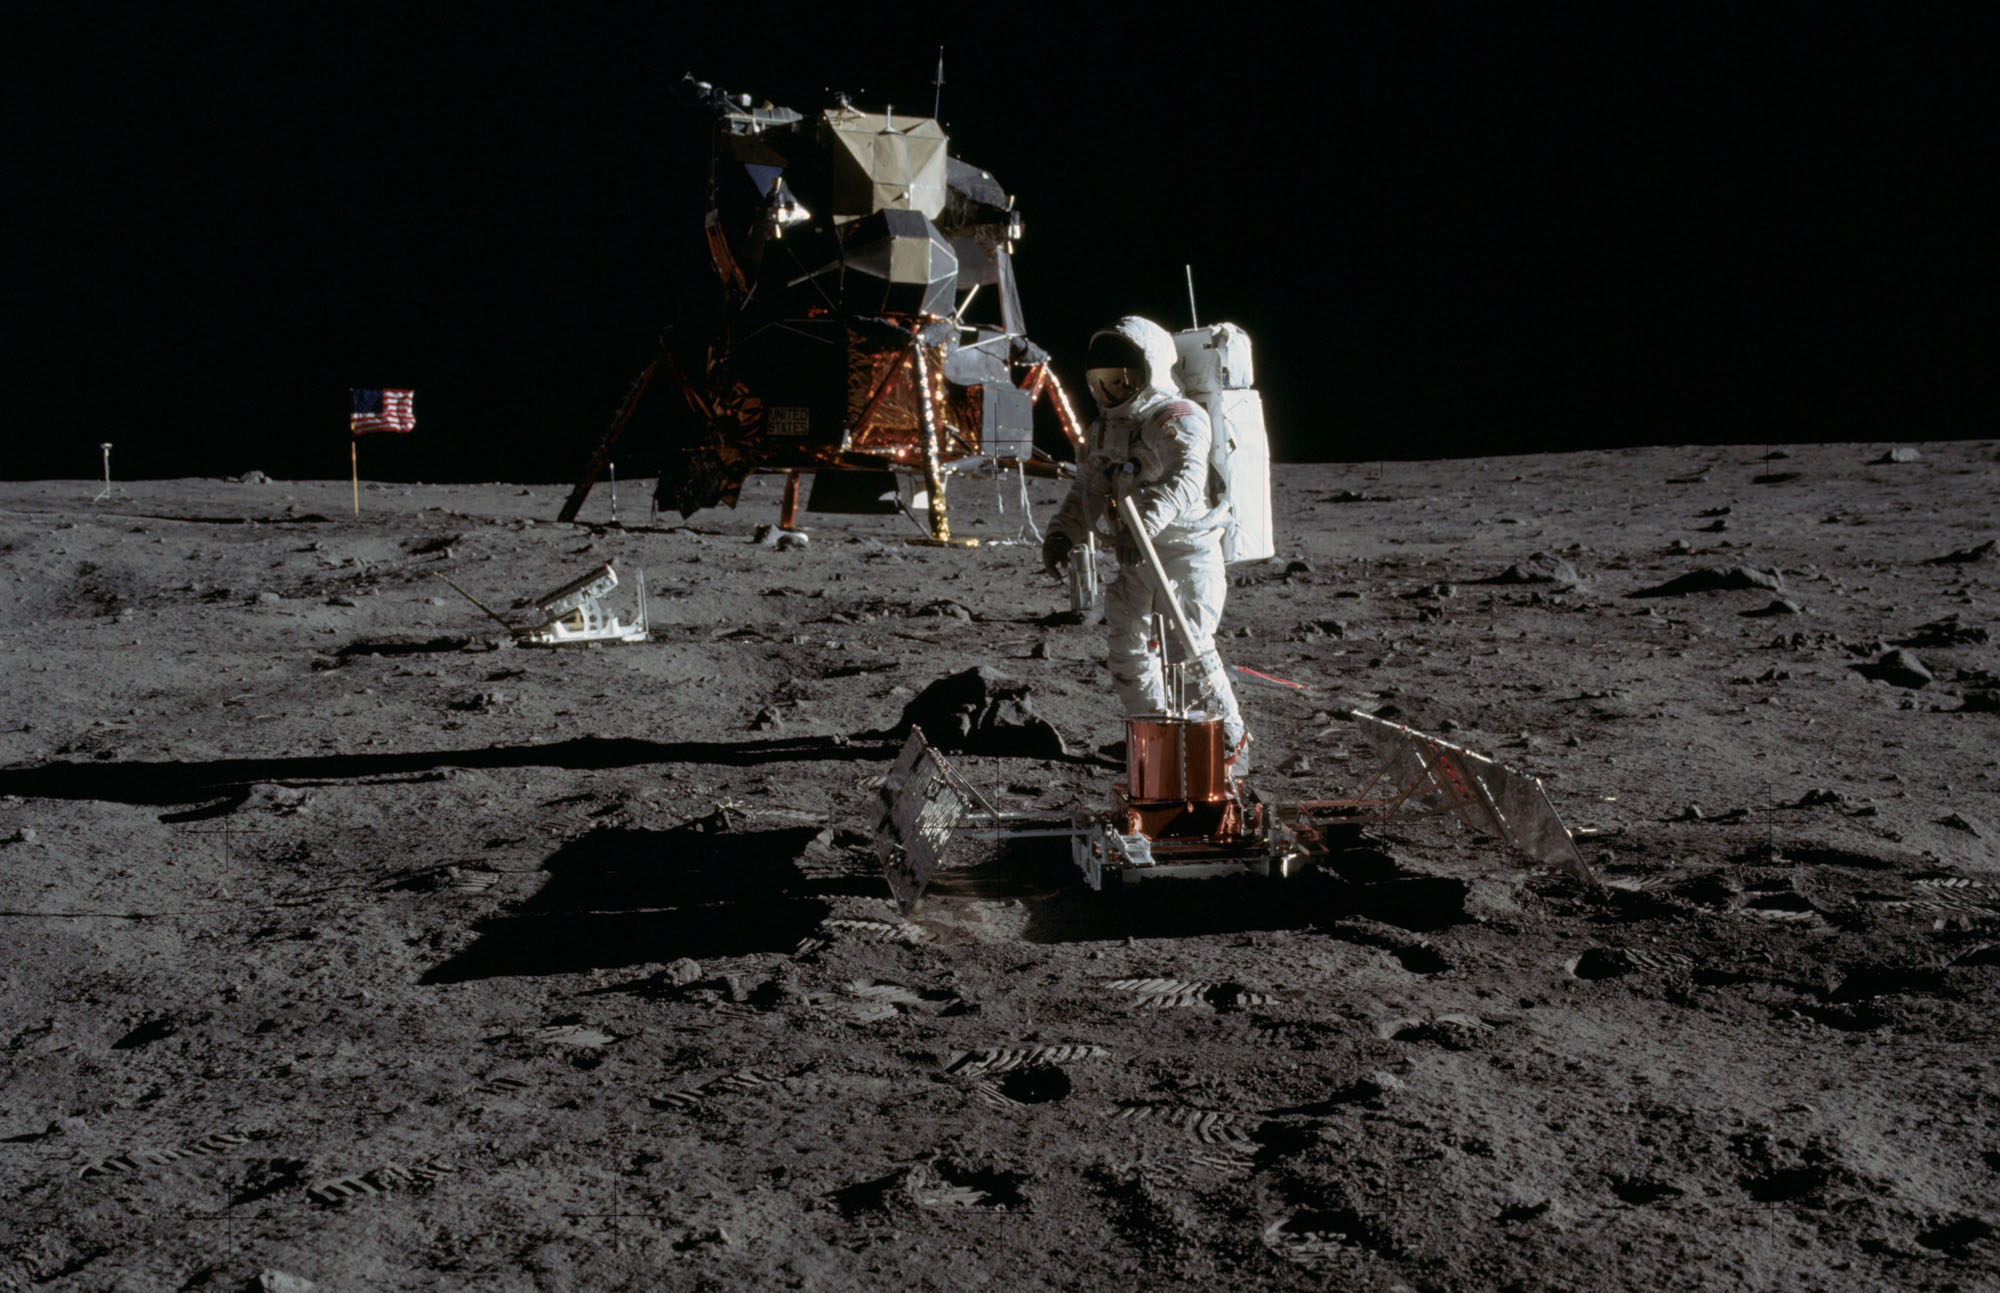 am 9 lunar landing